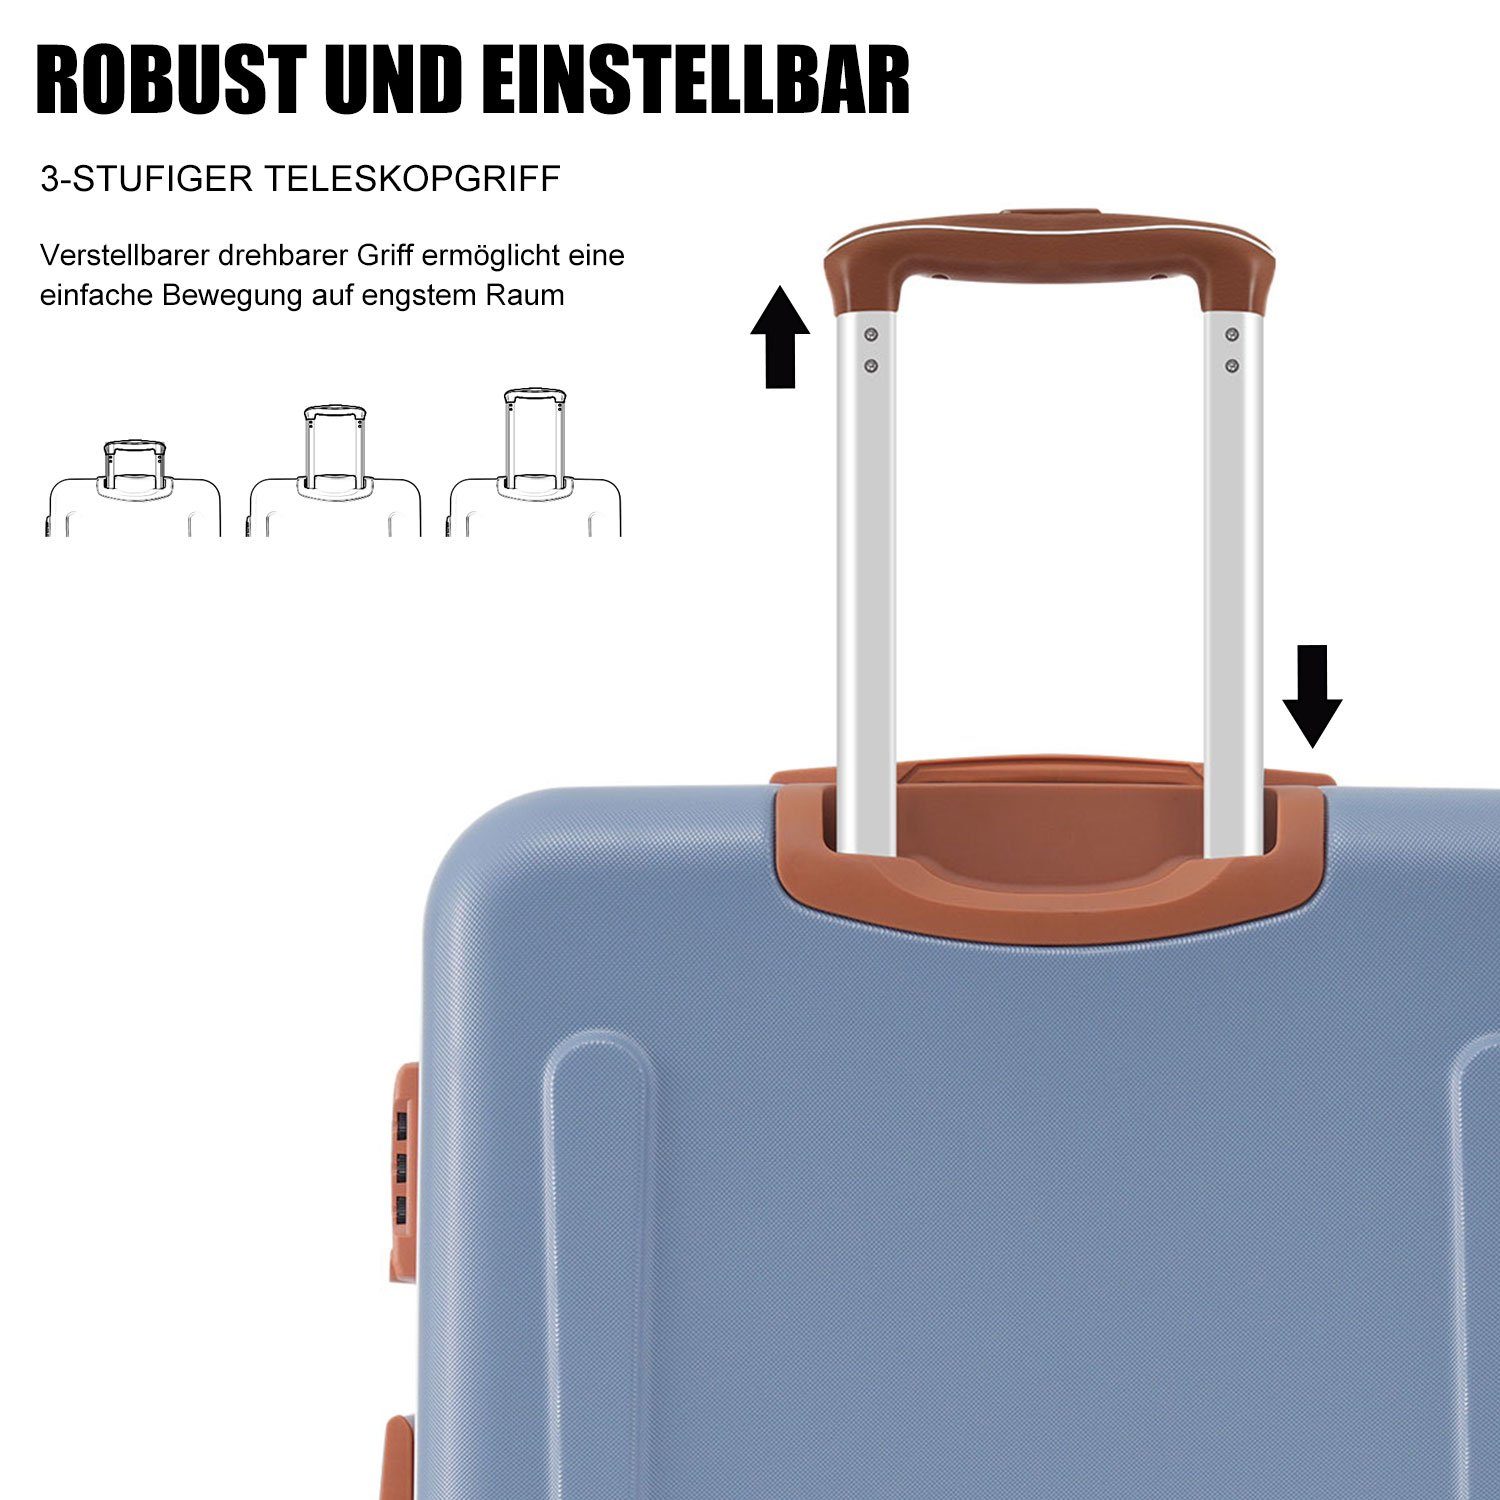 Rollen Hartschalen-Trolley Modern TSA Ulife Zollschloss, ABS-Material, 4 Reisekoffer Blau Handgepäck